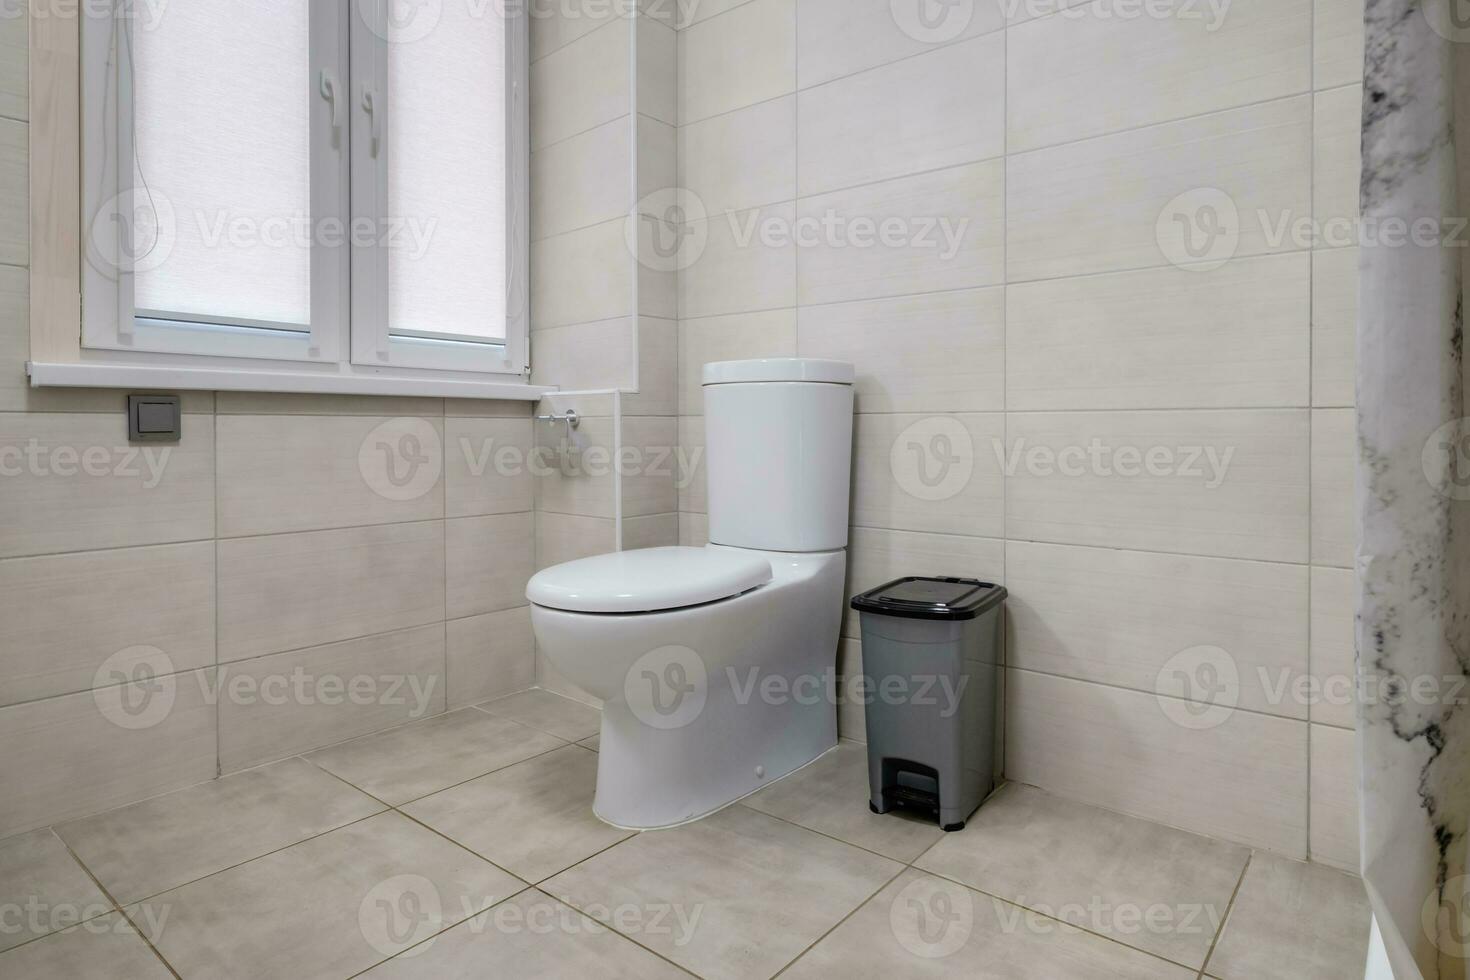 inodoro y detalle de una cabina de ducha de esquina con accesorio de ducha de montaje en pared foto